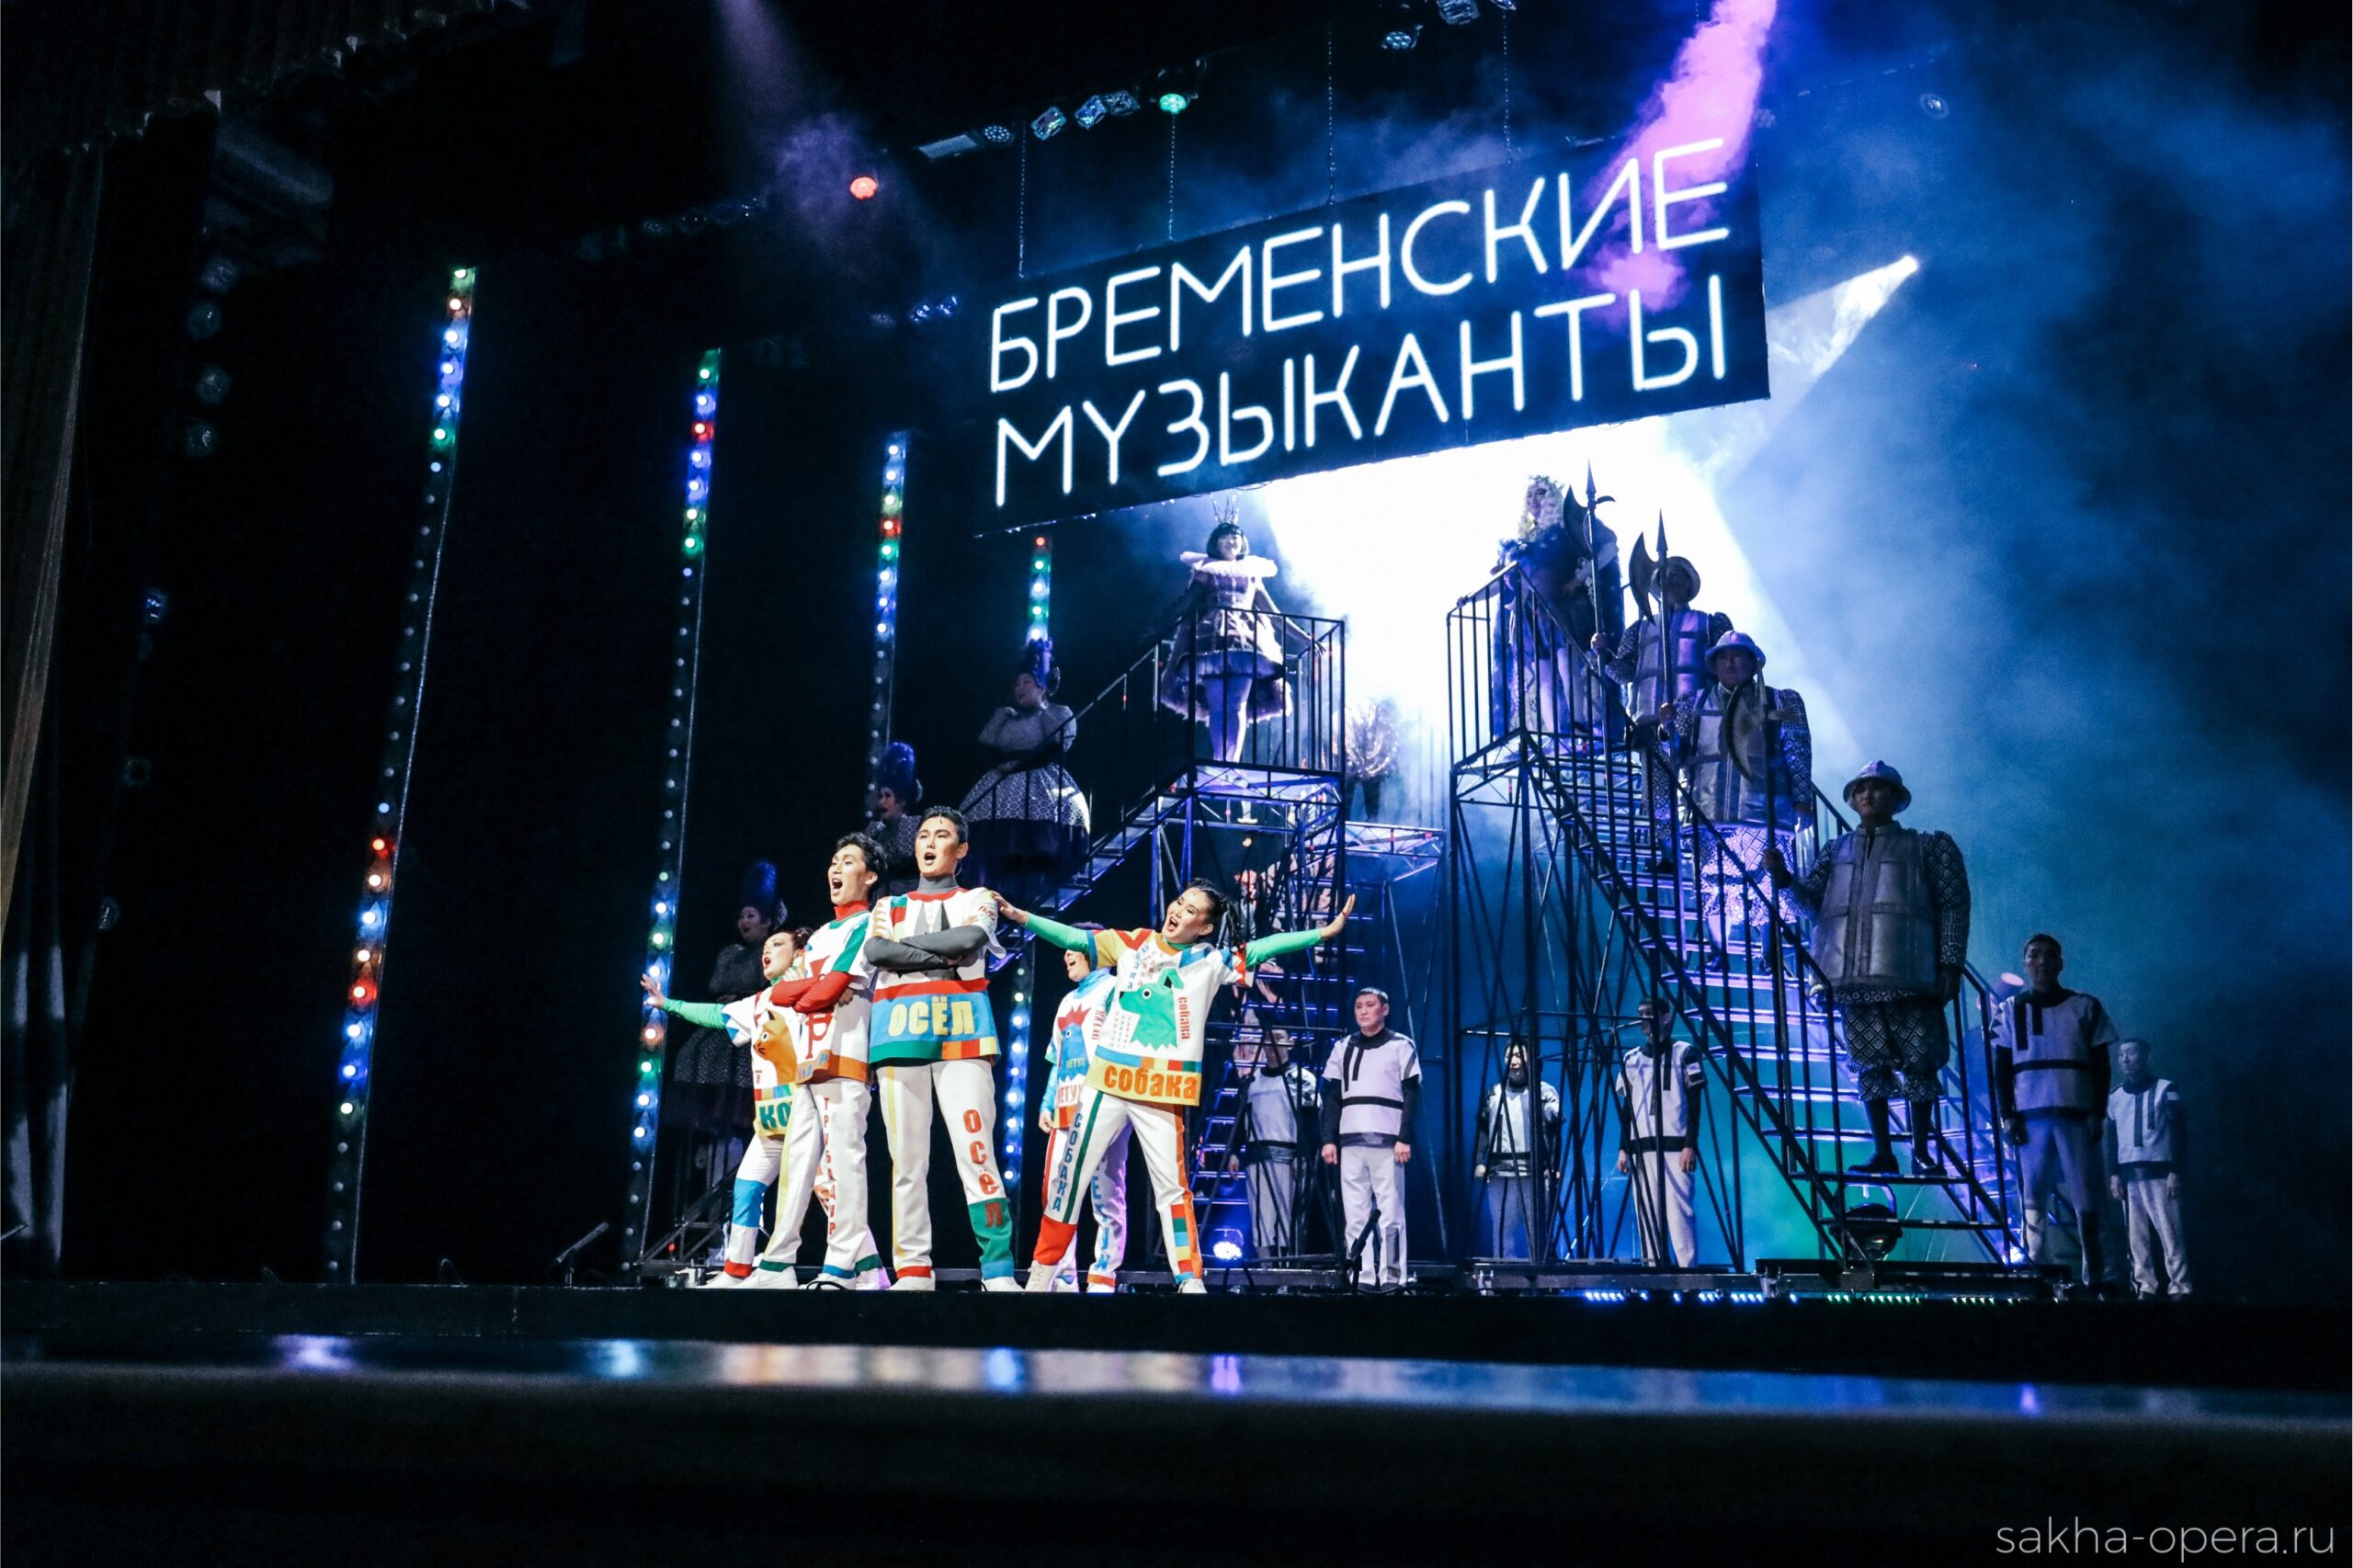 Более 5000 человек посетили спектакли Театра оперы и балета в Якутске за новогодний период